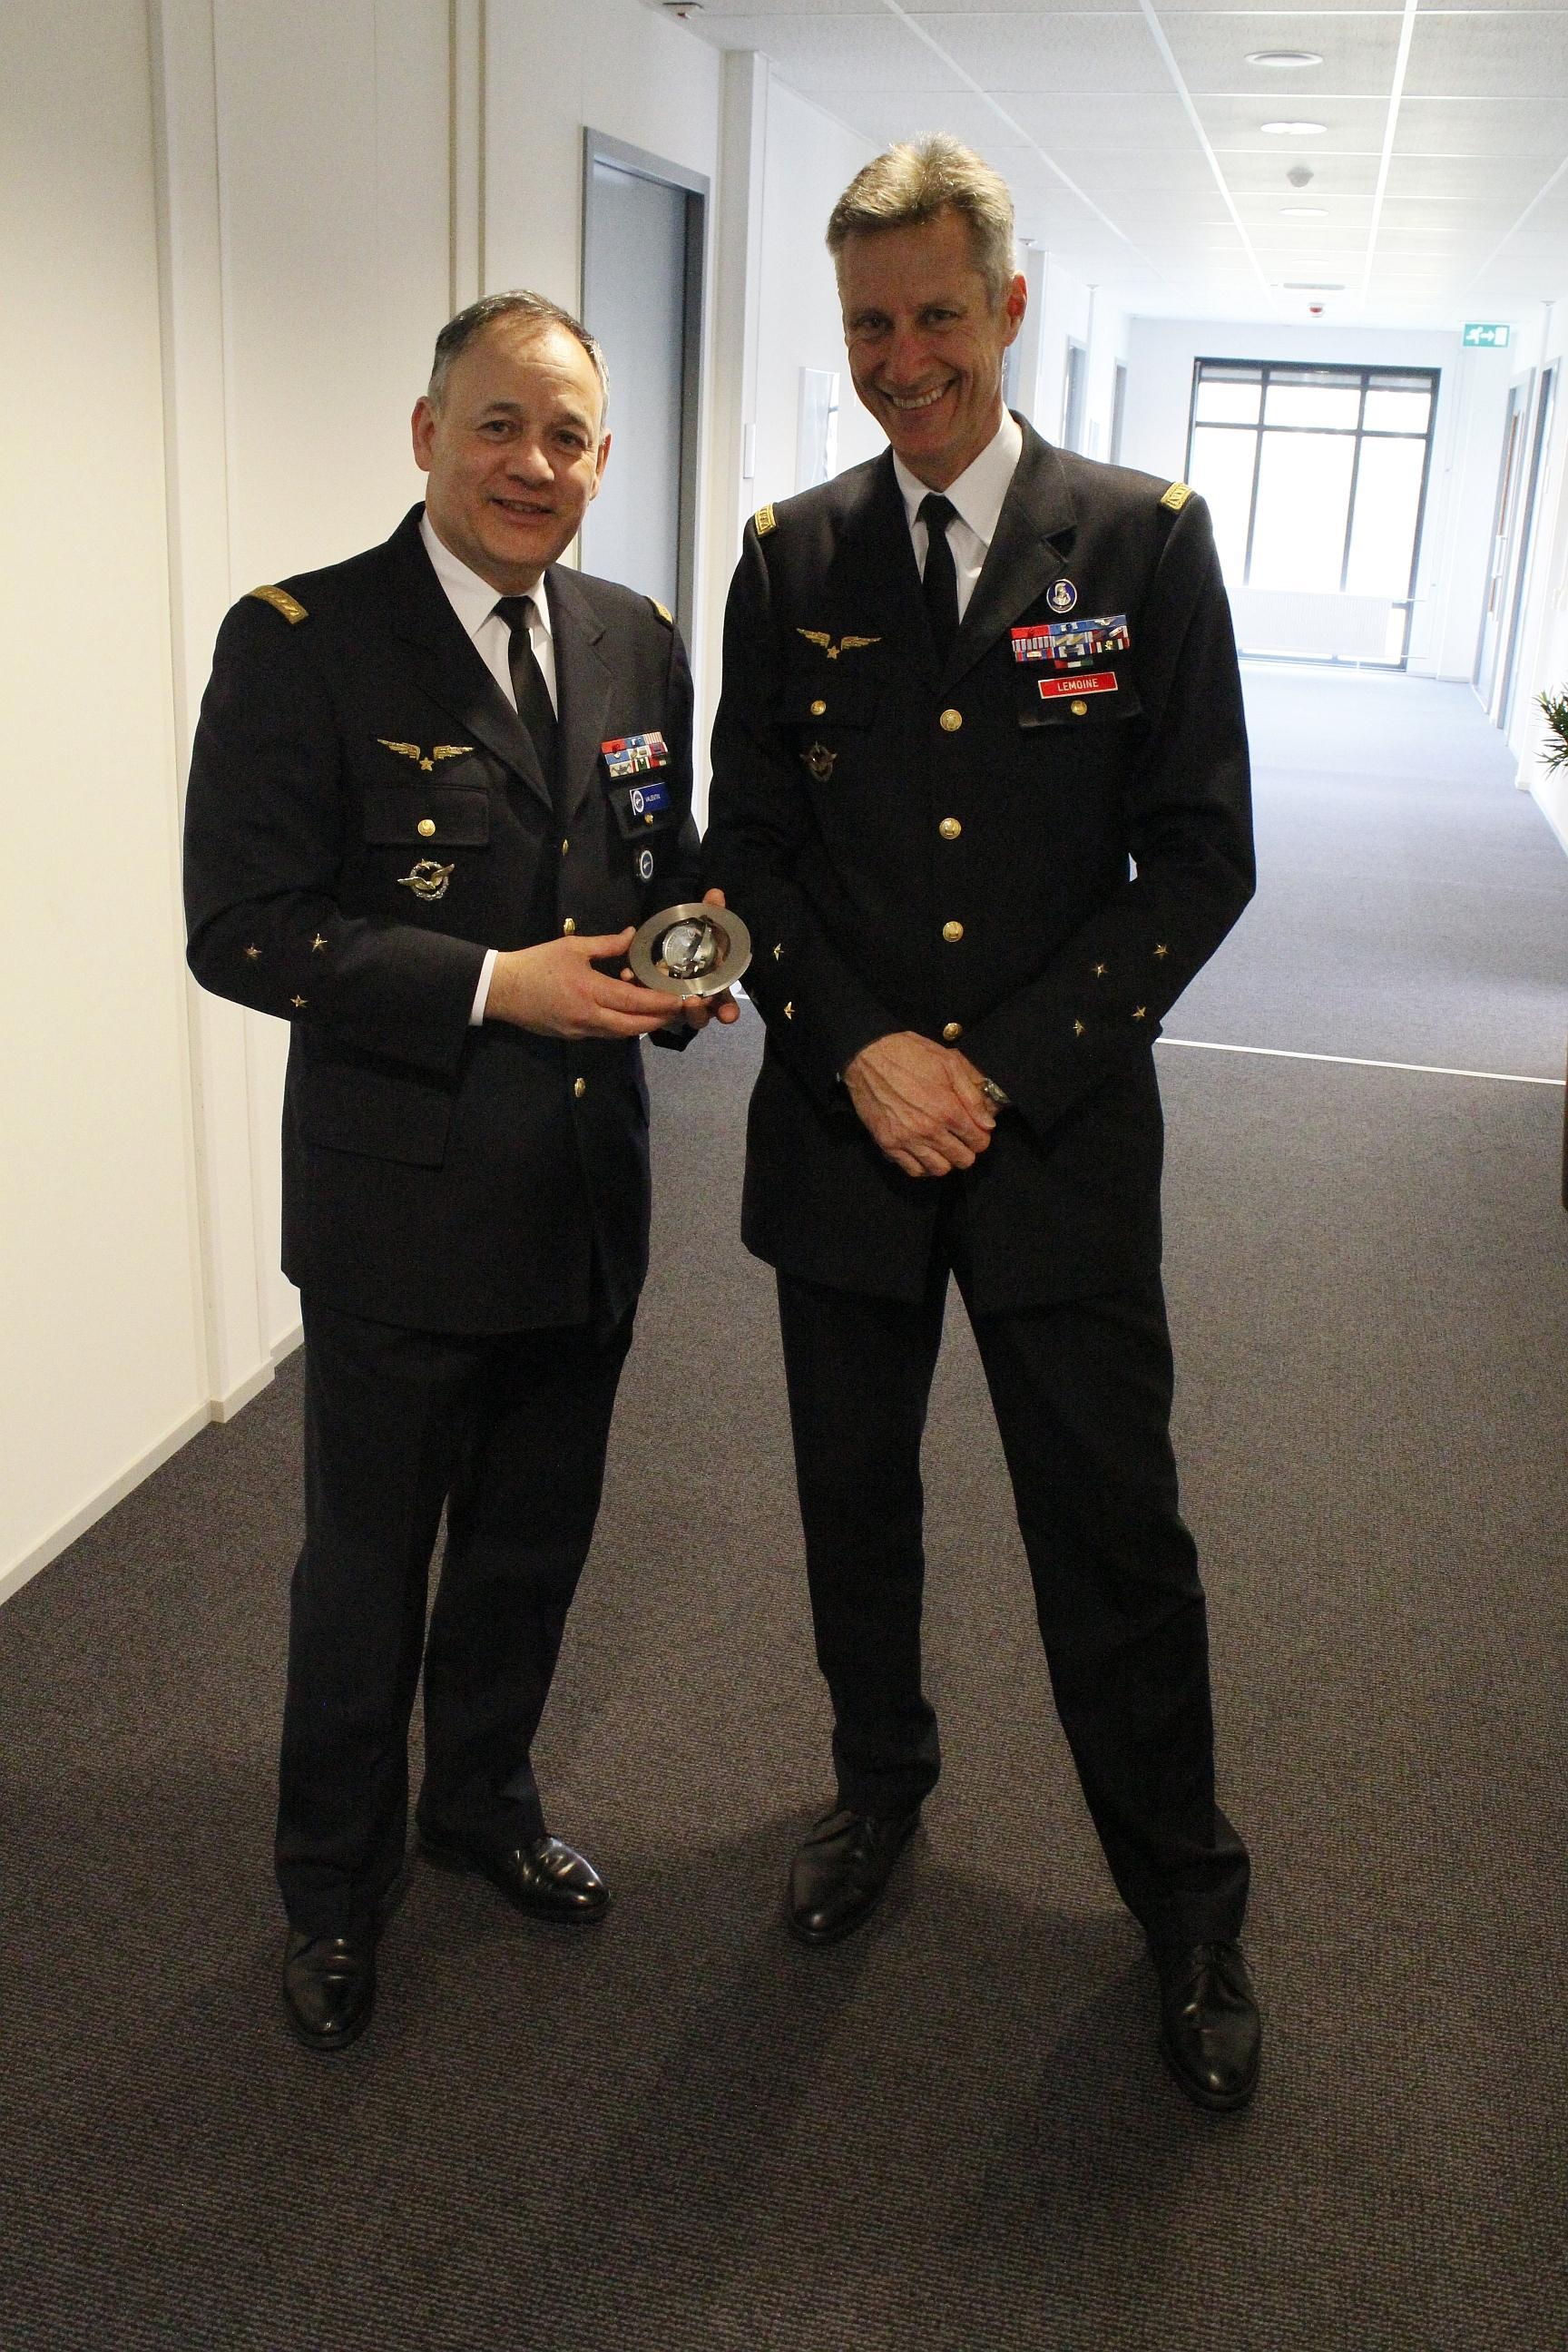 General Valentin (left) and General Lemoine